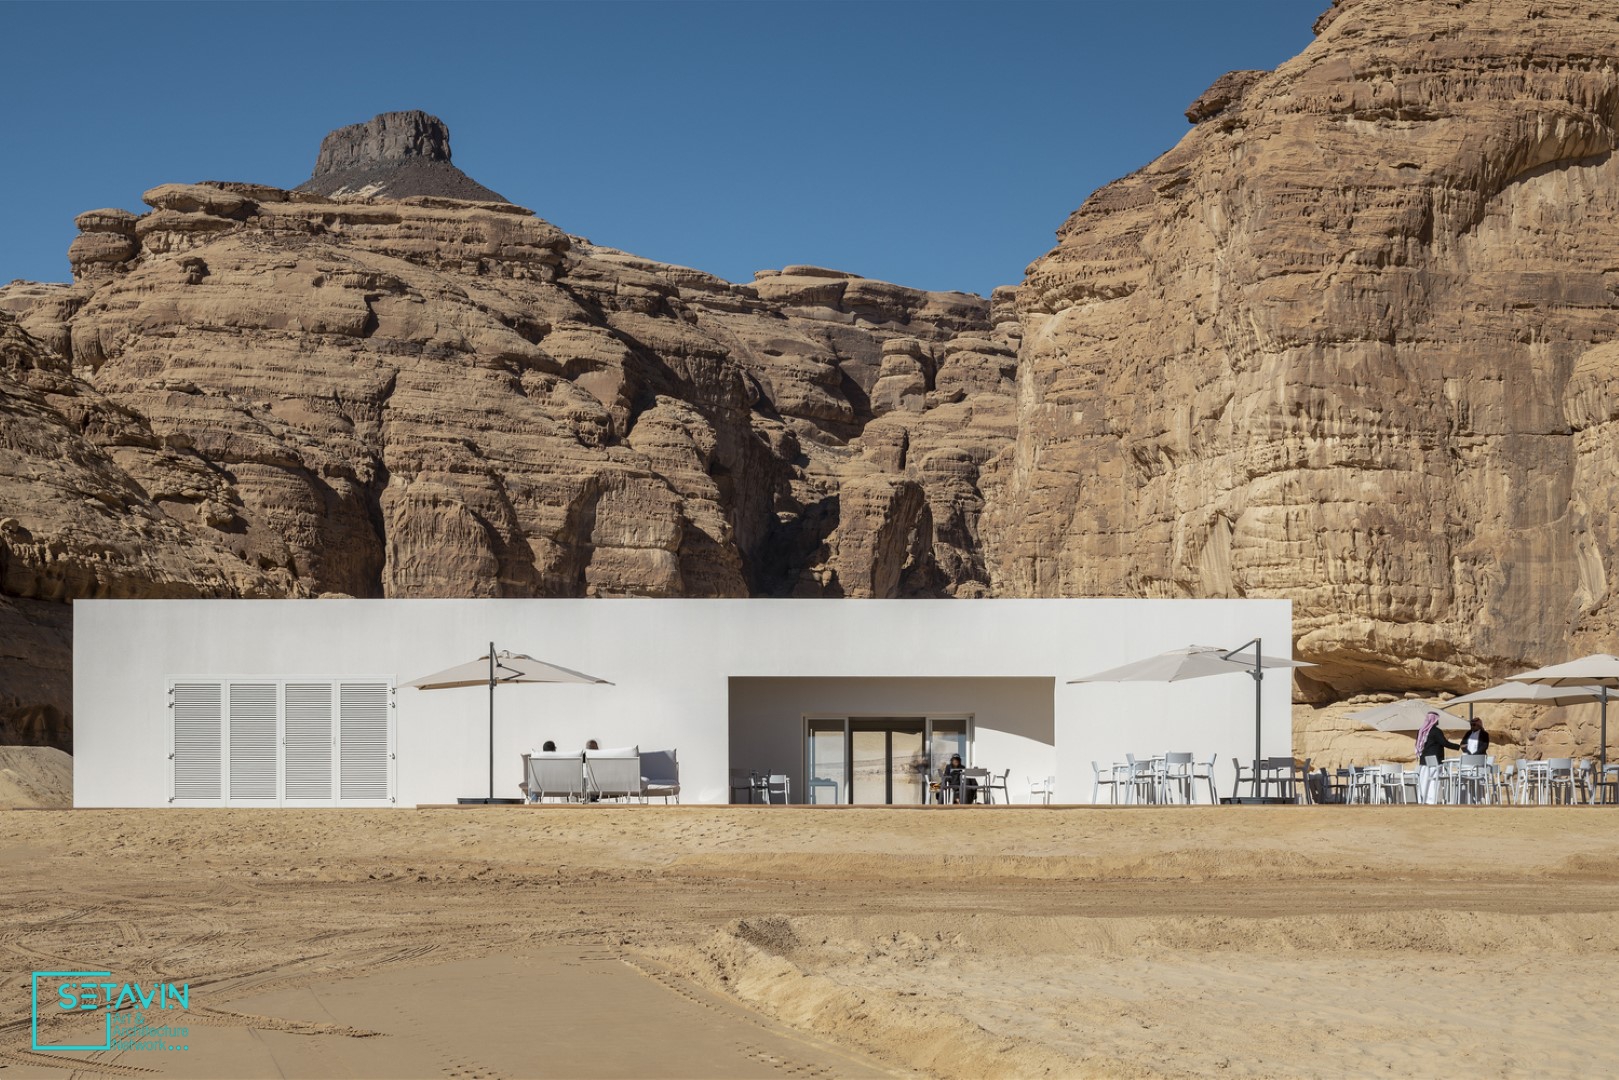 مرکز گردشگری Desert X AlUla , اثر استودیو طراحی KWY , عربستان سعودی , AL-ULA , SAUDI ARABIA , مرکز گردشگری , Desert X AlUla , استودیو طراحی , KWY , بیابان , Desert , گردشگری , مرکز فرهنگی , ستاوین , شبکه هنر و معماری